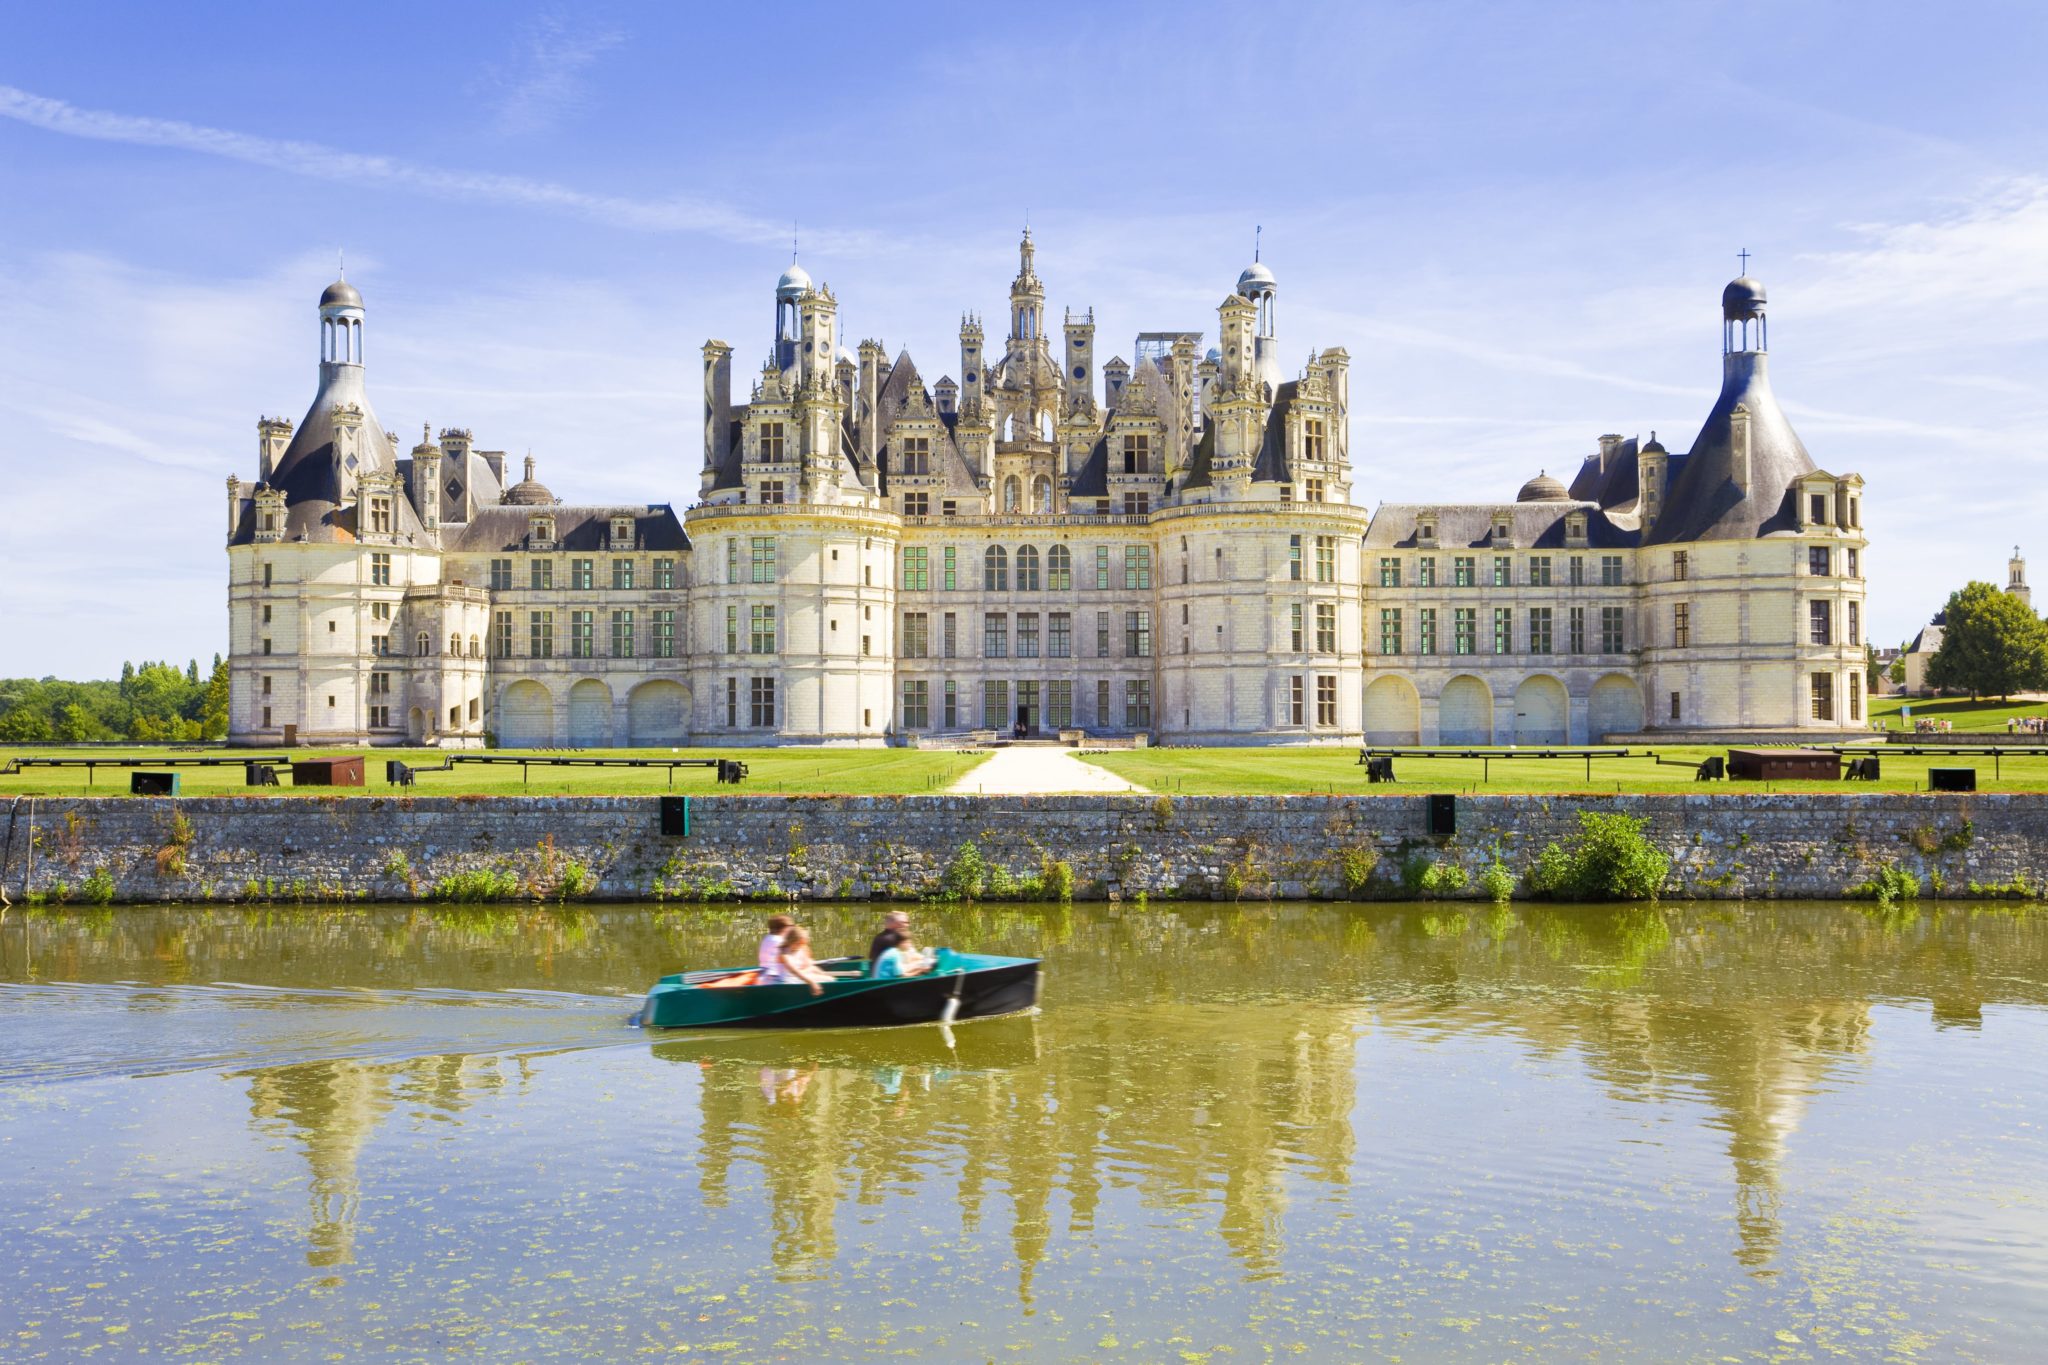 Groot wit kasteel met veel verschillende torentjes met zwarte daken gelegen op grasland aan rivier de Loire waar een bootje met mensen overheen varen.